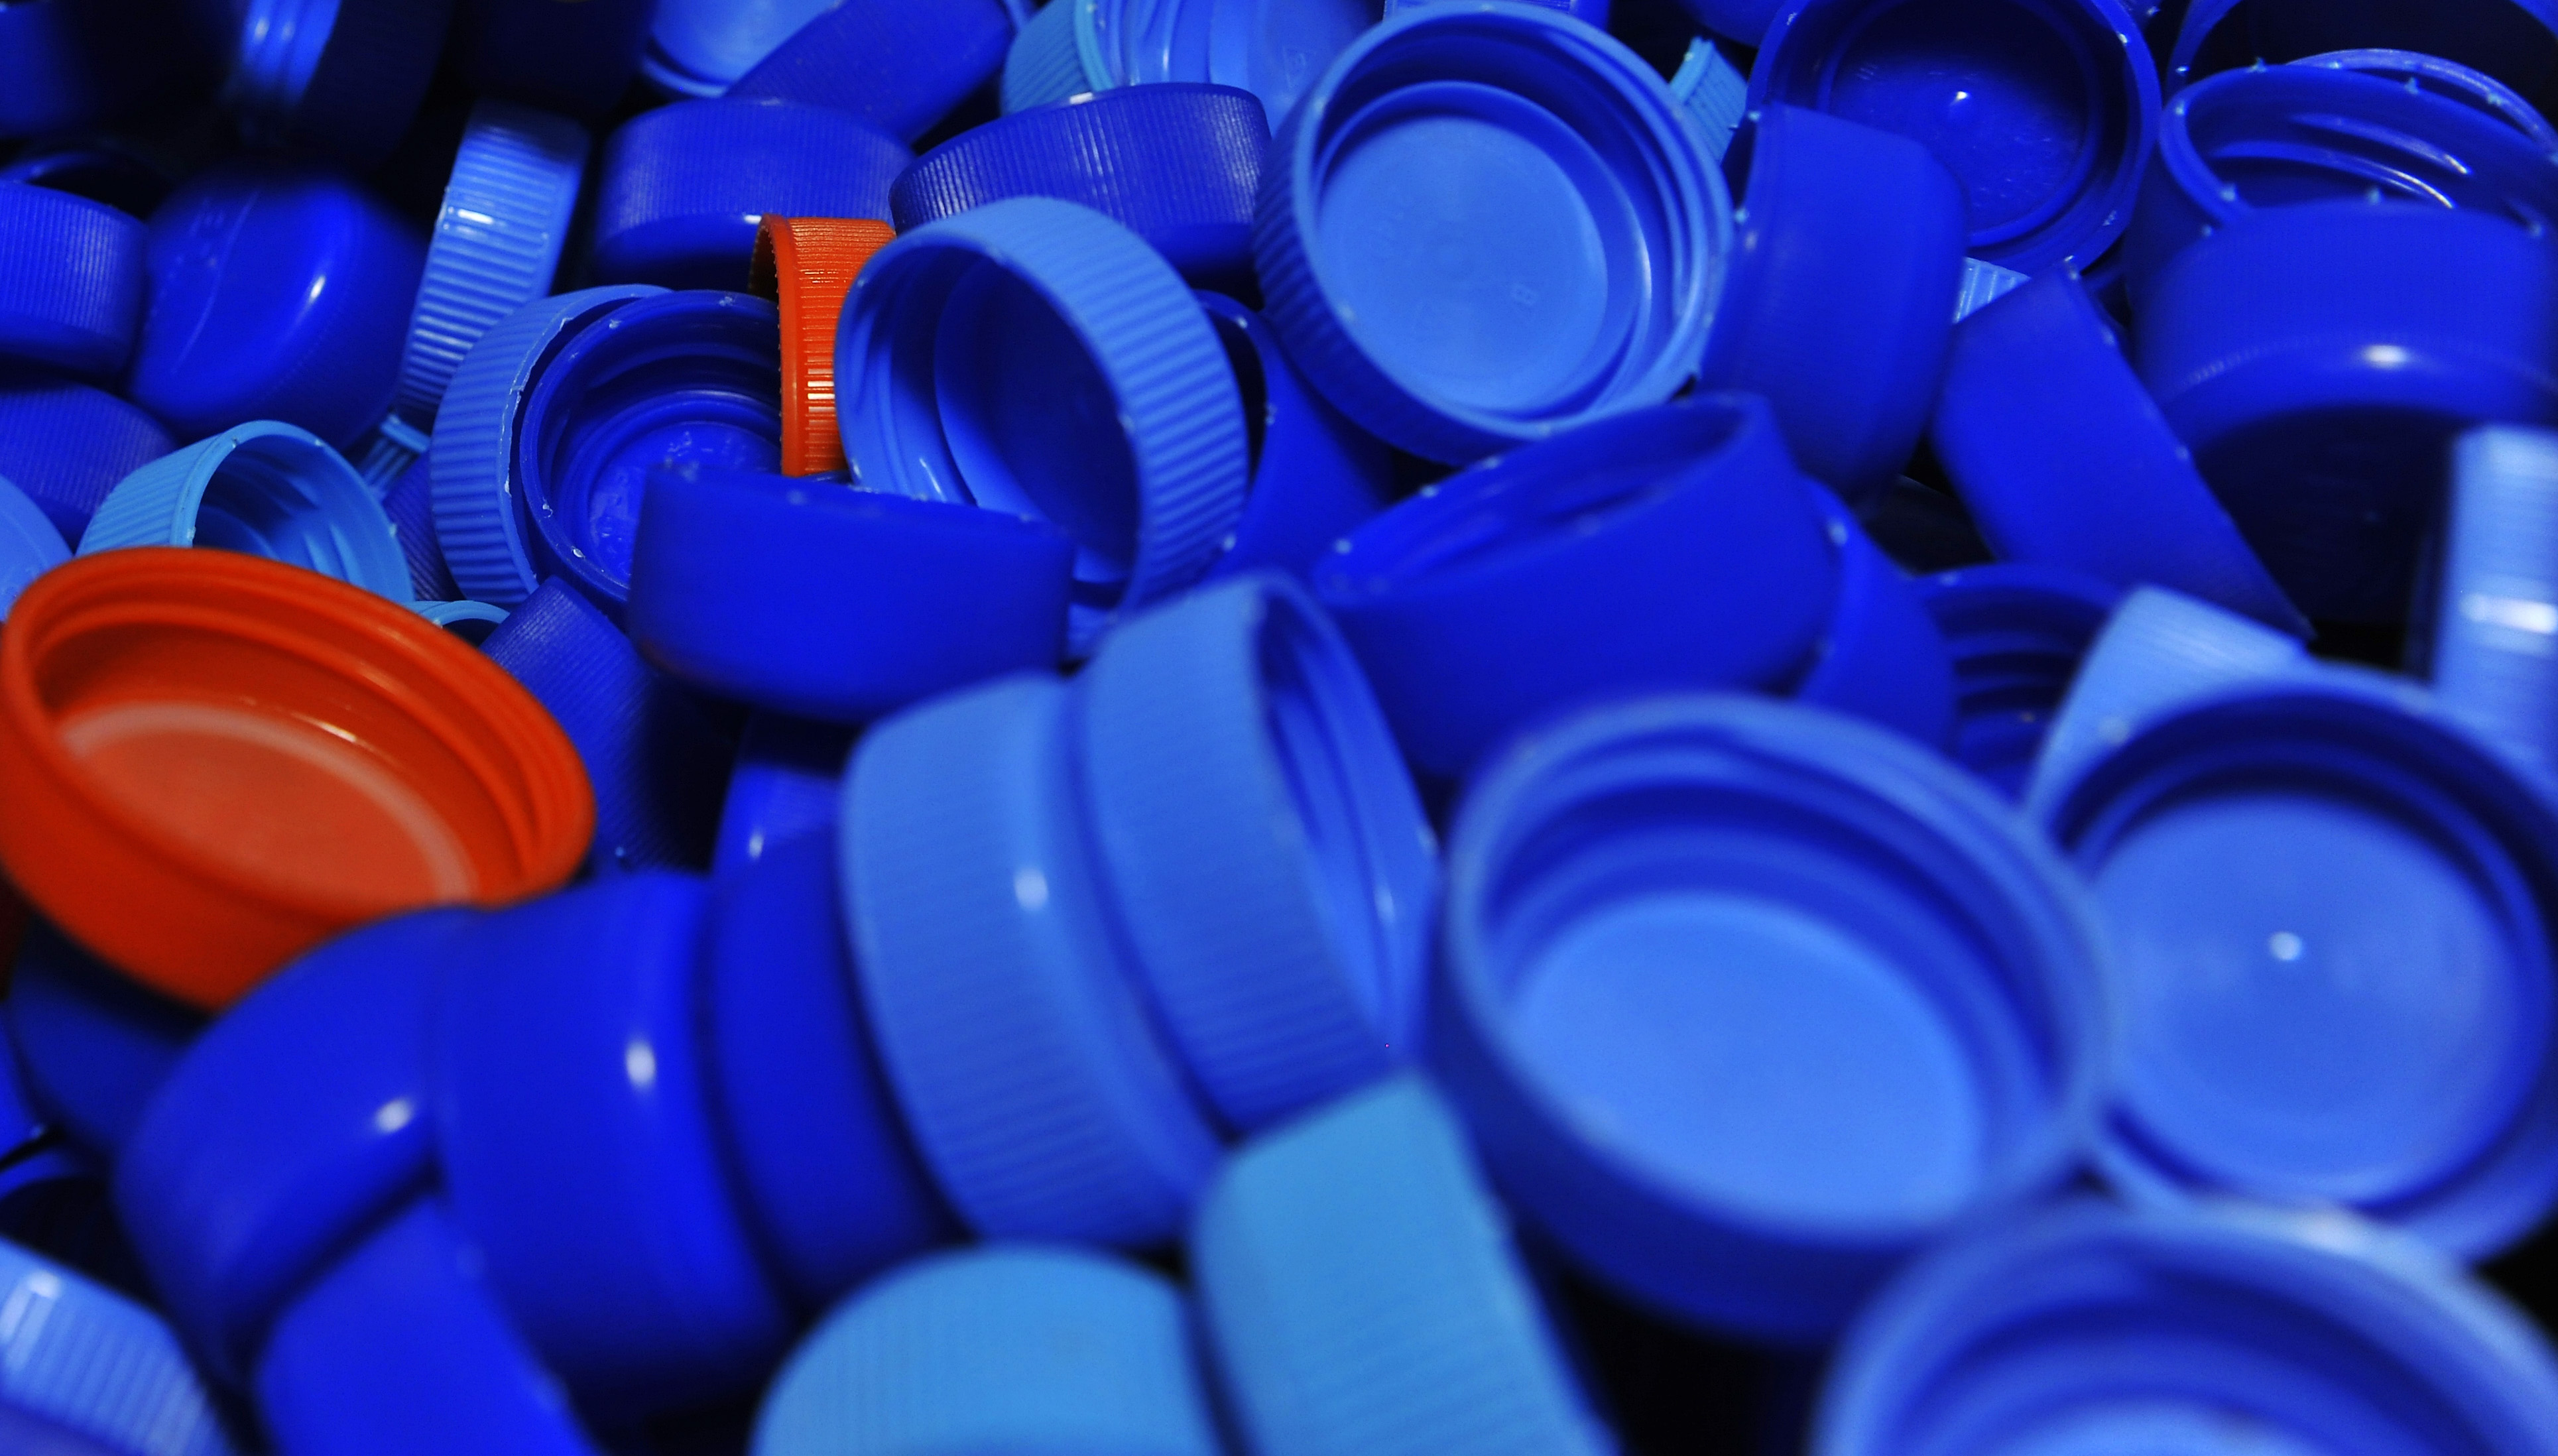 plastic bottle caps for veterans